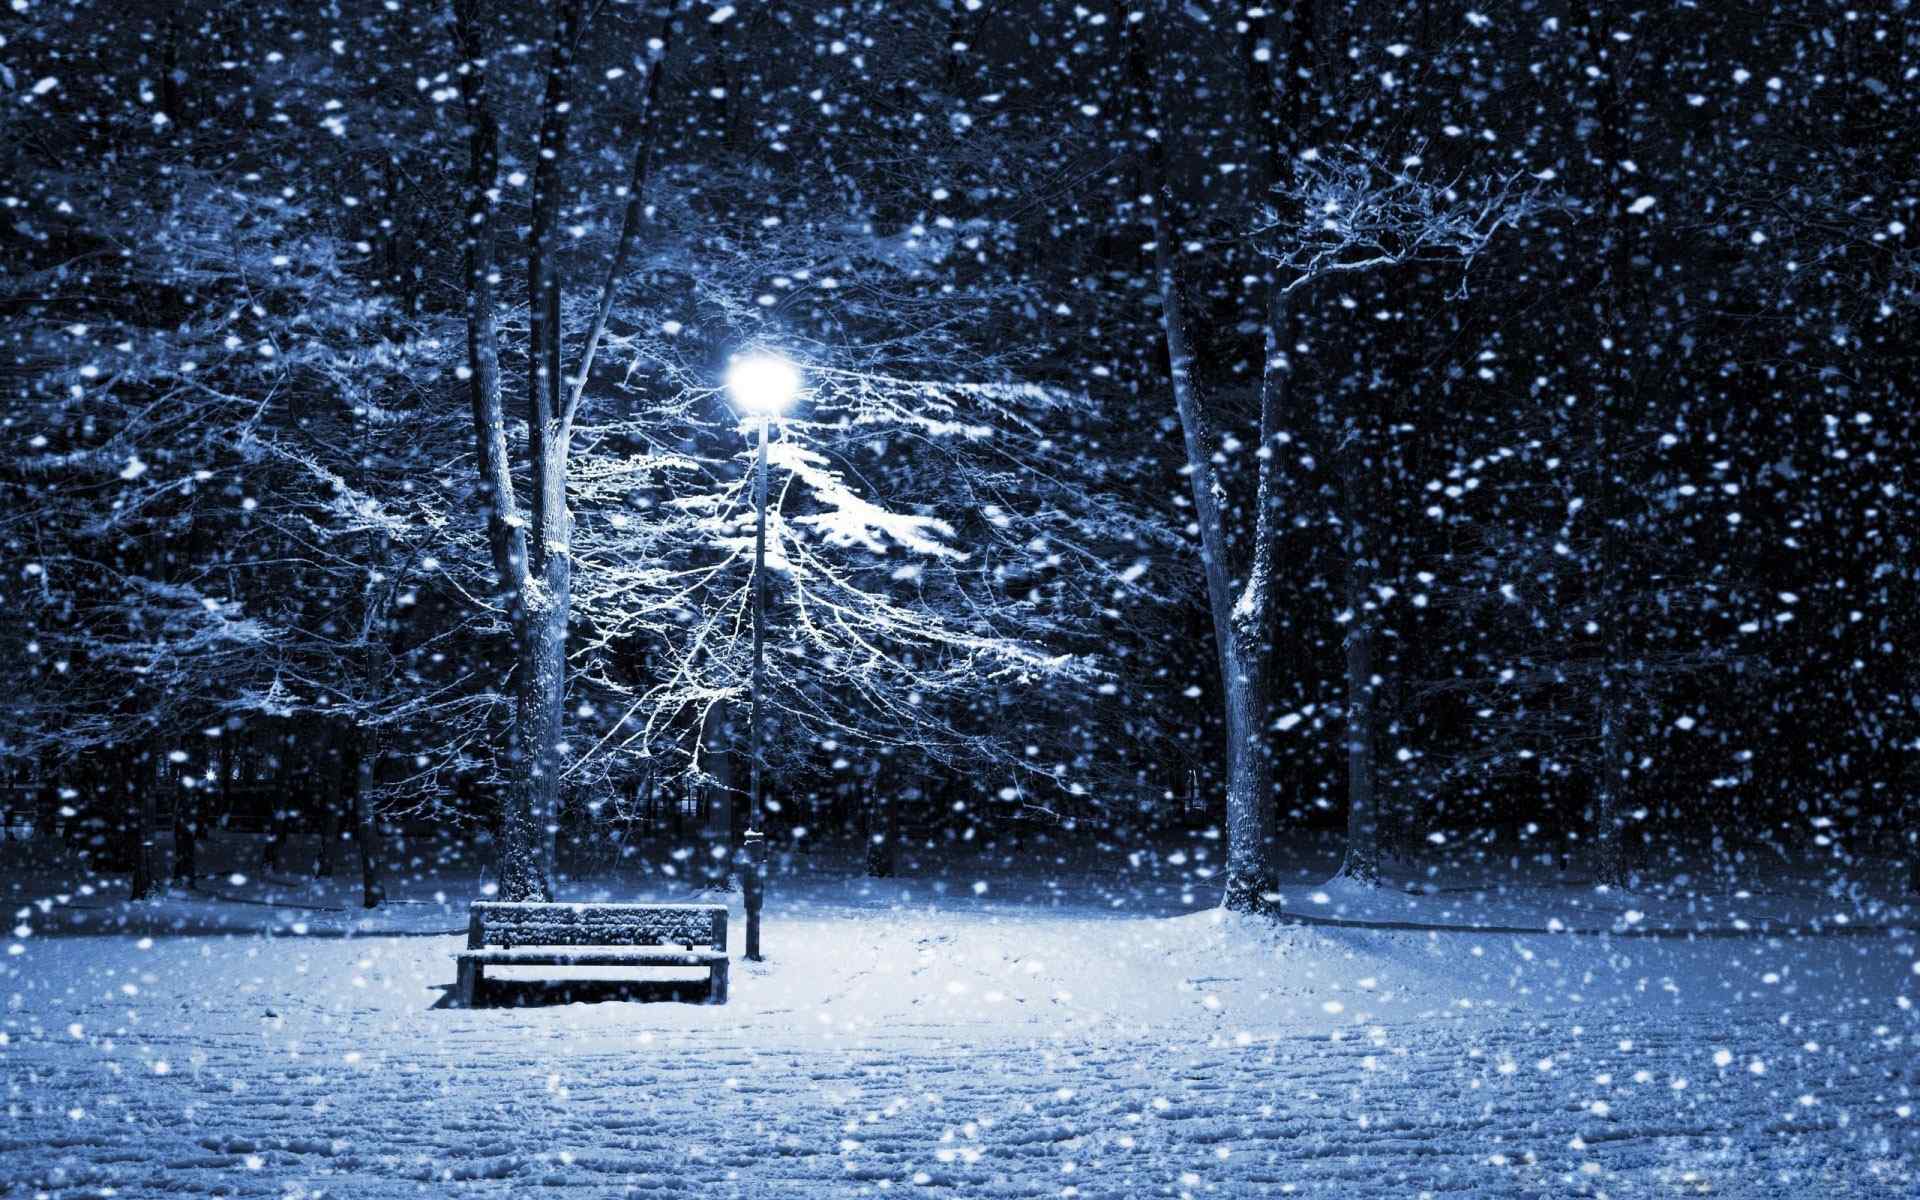 雪景夜色摄影壁纸